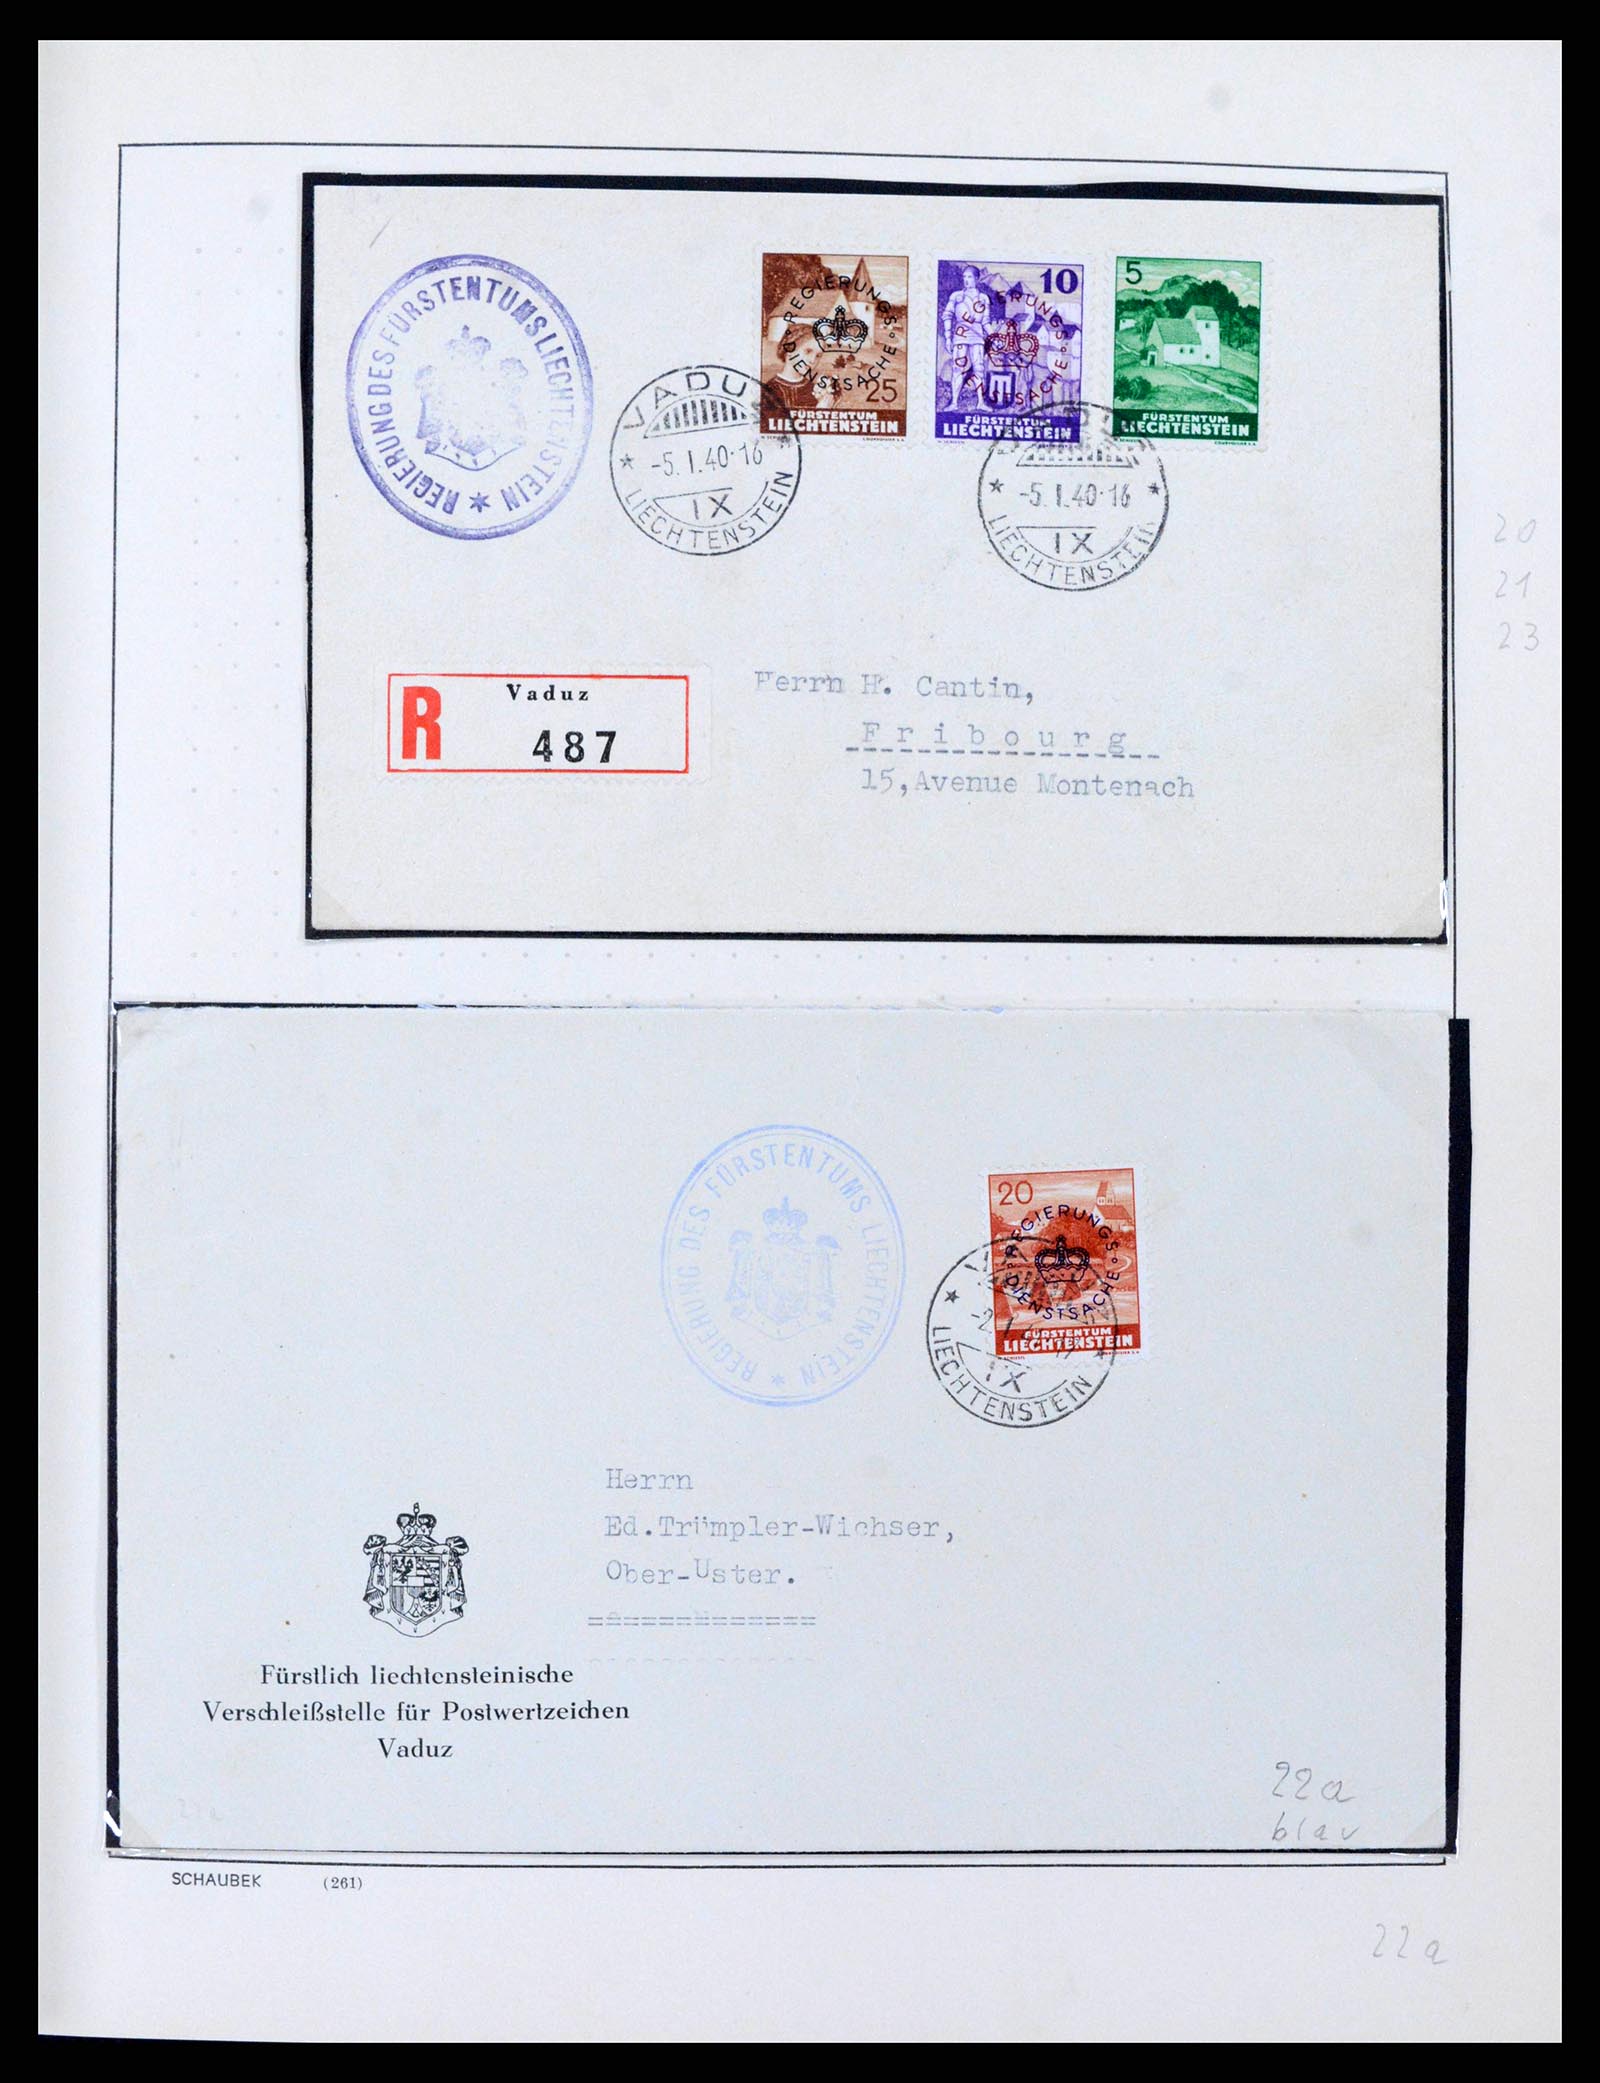 38204 0020 - Stamp collection 38204 Liechtenstein service covers 1932-1989.